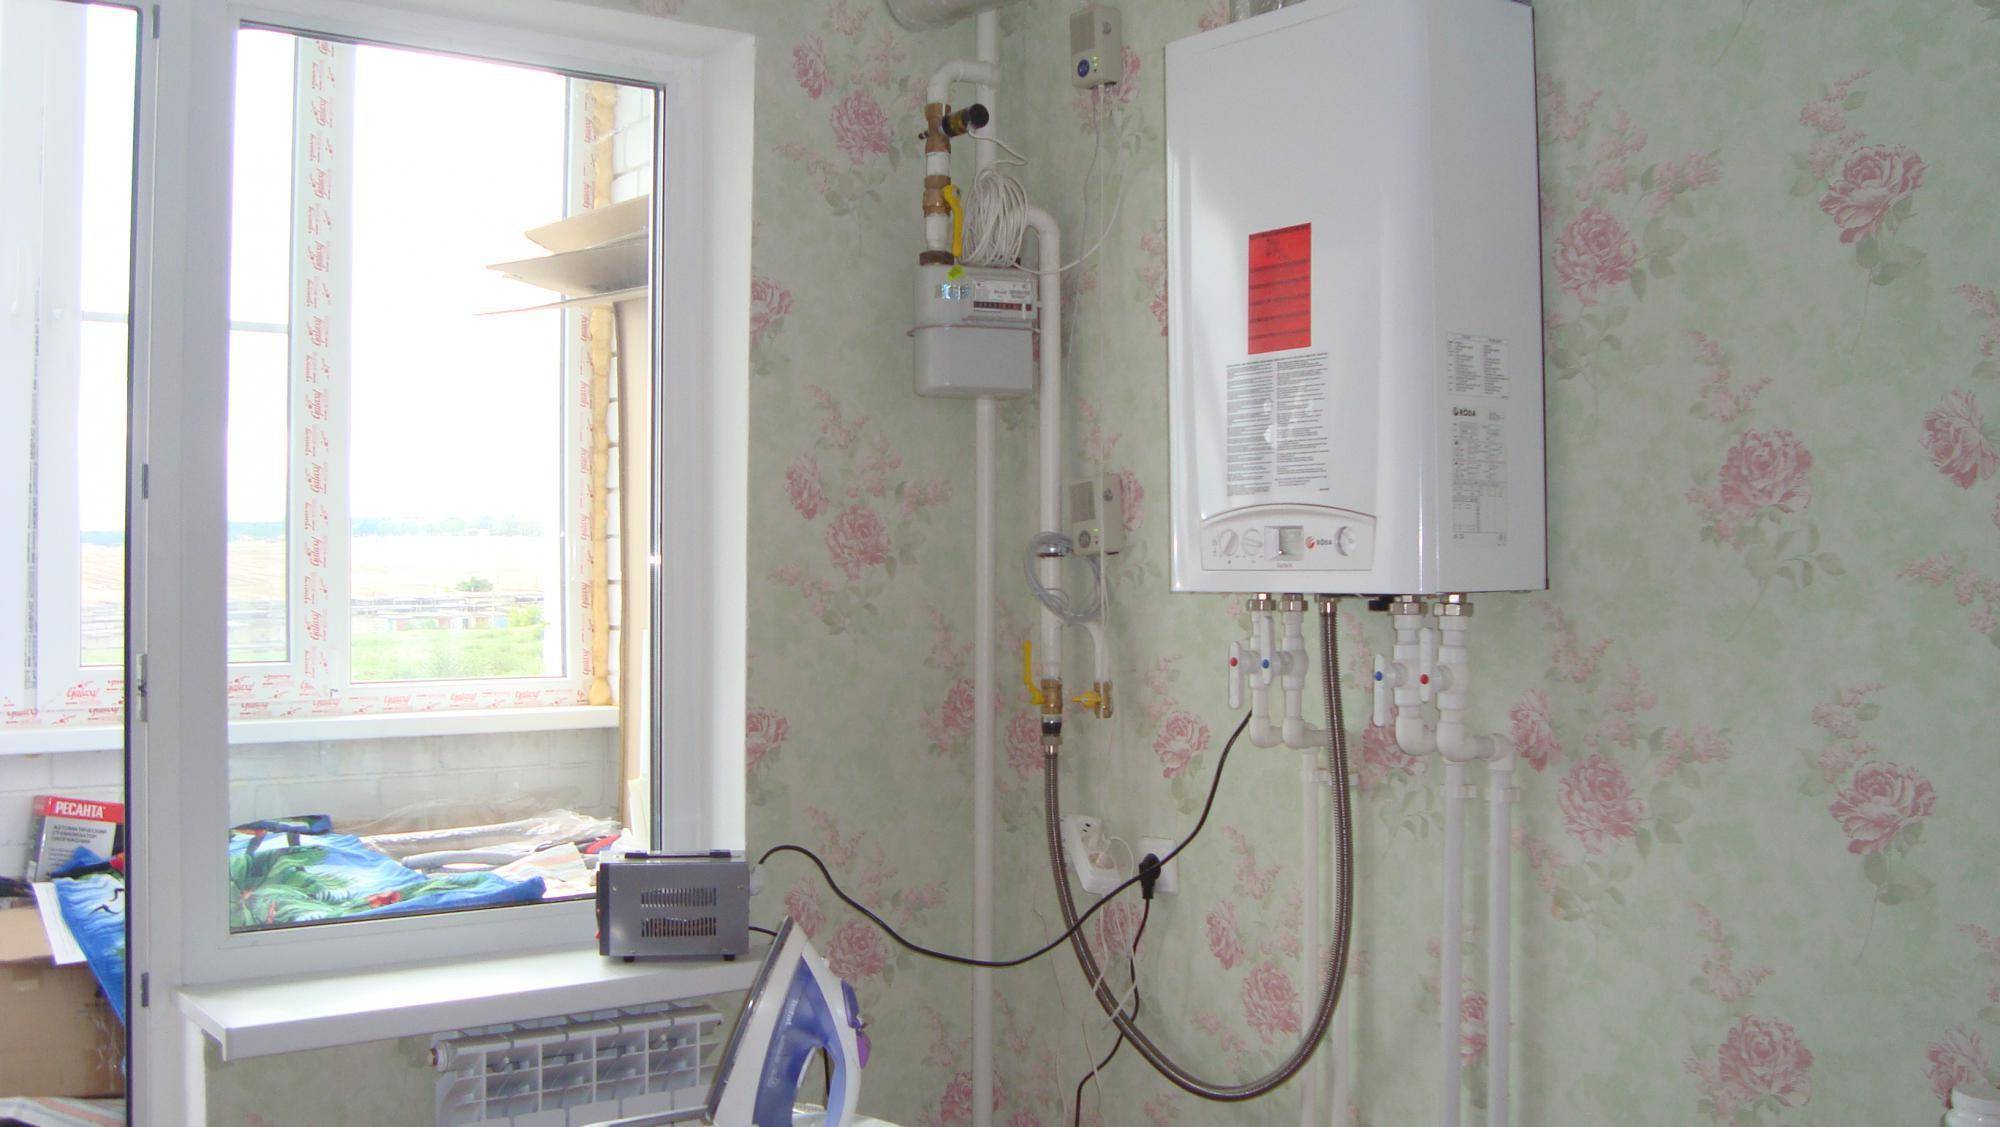 Индивидуальное отопление в многоквартирном доме: закон, установка, минусы индивидуального отопления :: businessman.ru